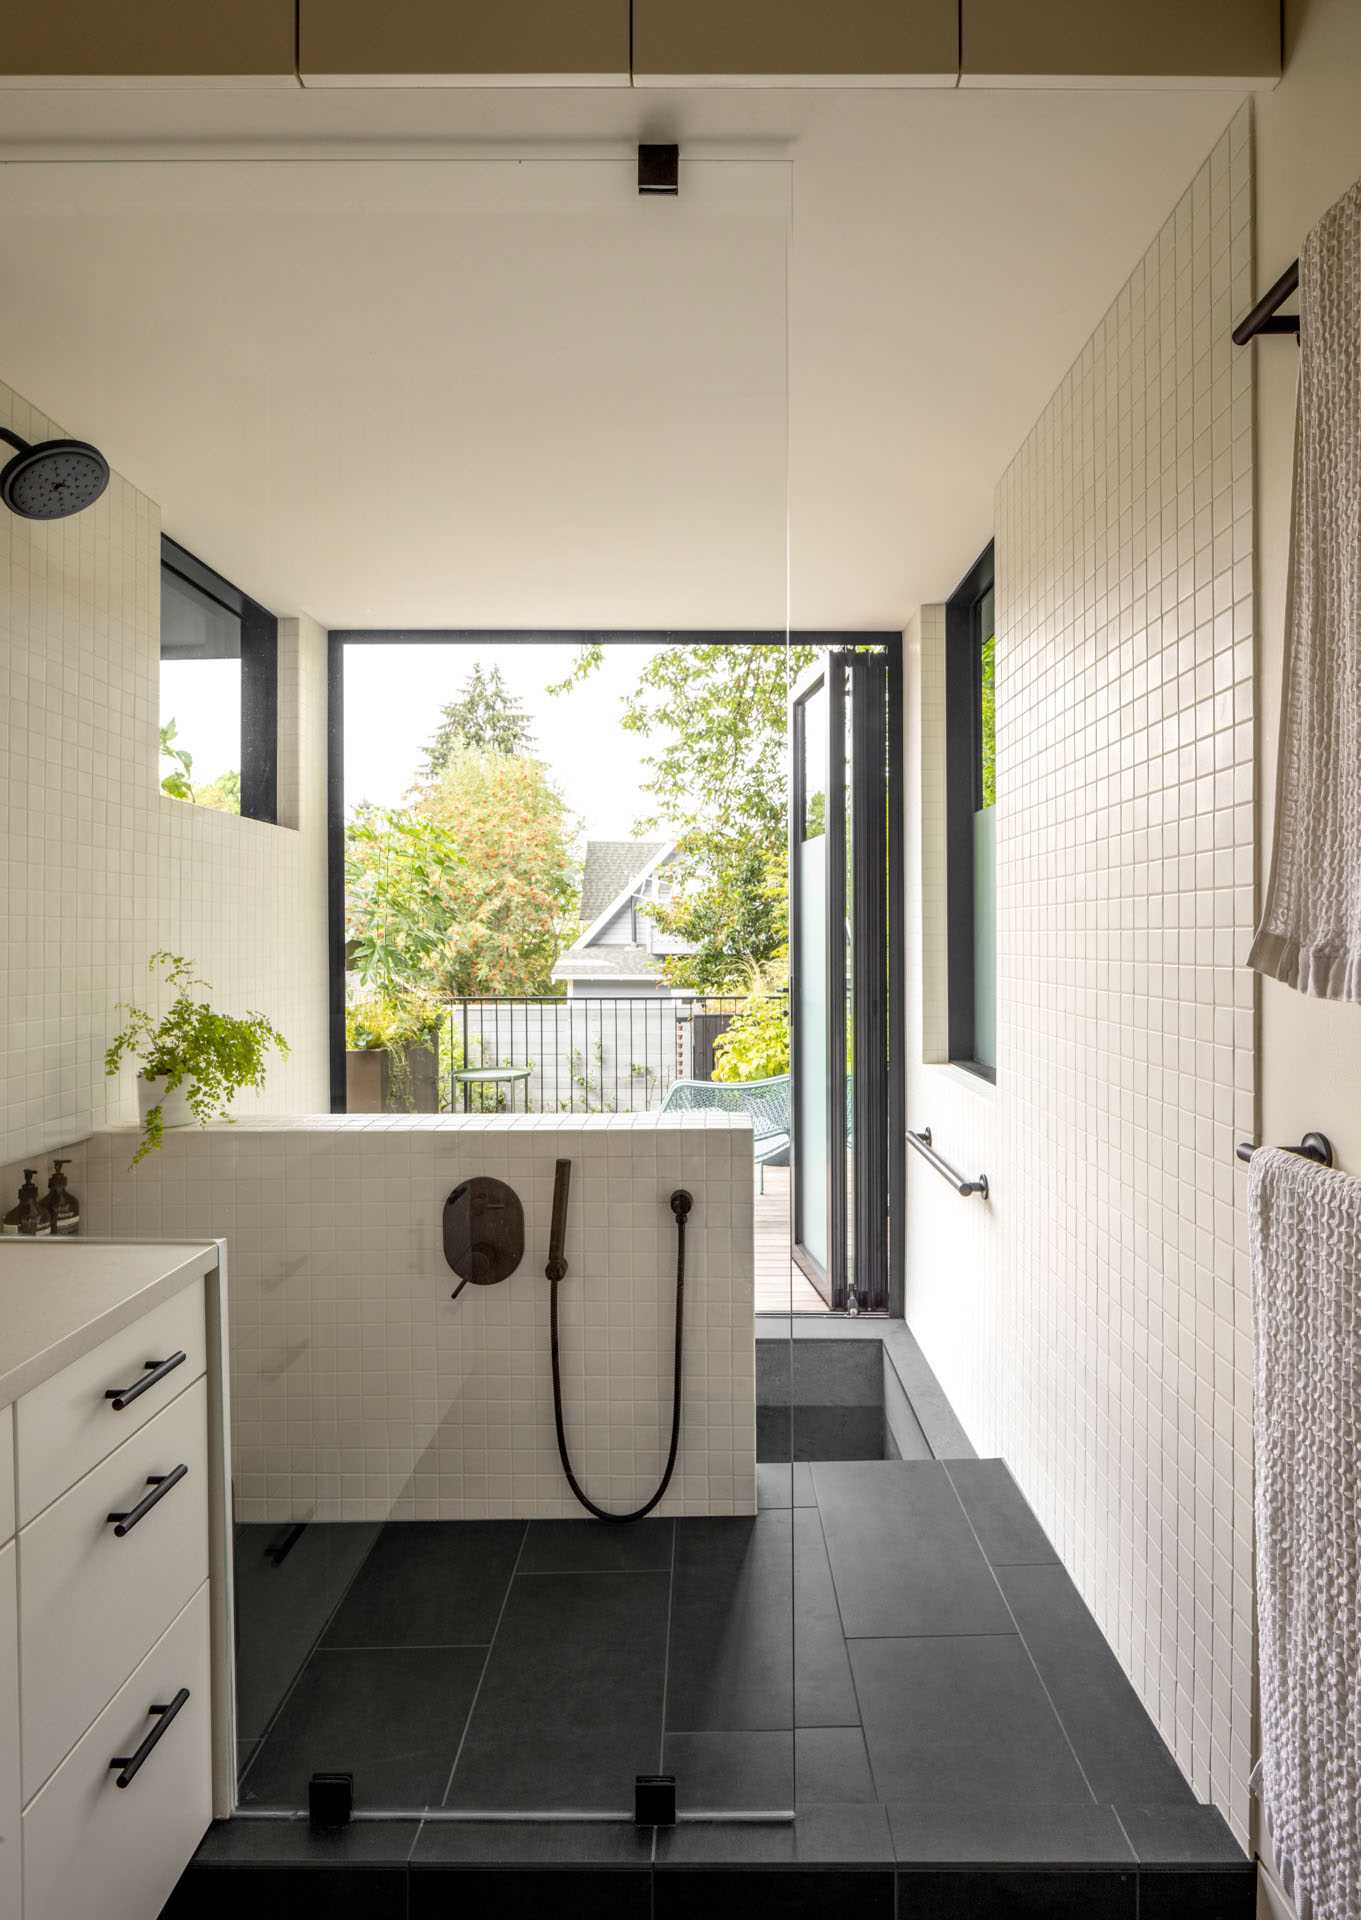 یک حمام خانوادگی مدرن شامل یک وان سنتی ژاپنی (Ofuro) است که مستقیماً از طریق یک در شیشه ای تاشو به فضای باز متصل می شود.  یک اتاق توالت مجزا راحتی و قابلیت استفاده را برای خانواده جوان افزایش می دهد.